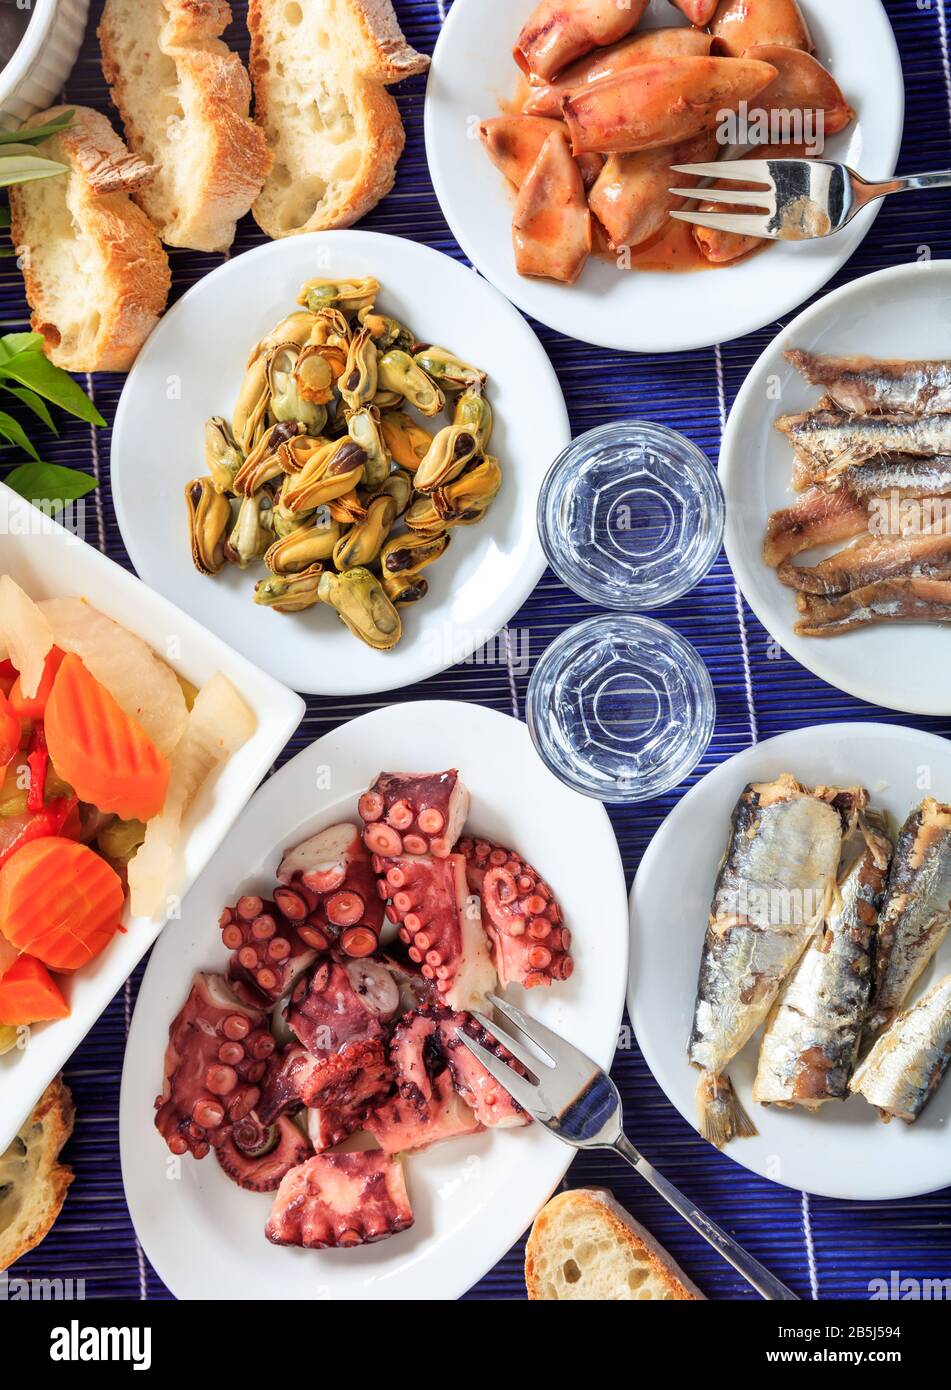 Kaltes Ouzo, Raki-Alkohol mit Meeresfrüchte-Meze auf weißen Gerichten. Zwei Gläser und verschiedene gesunde Weichtiere Hintergrund. Draufsicht, vertikal. Stockfoto